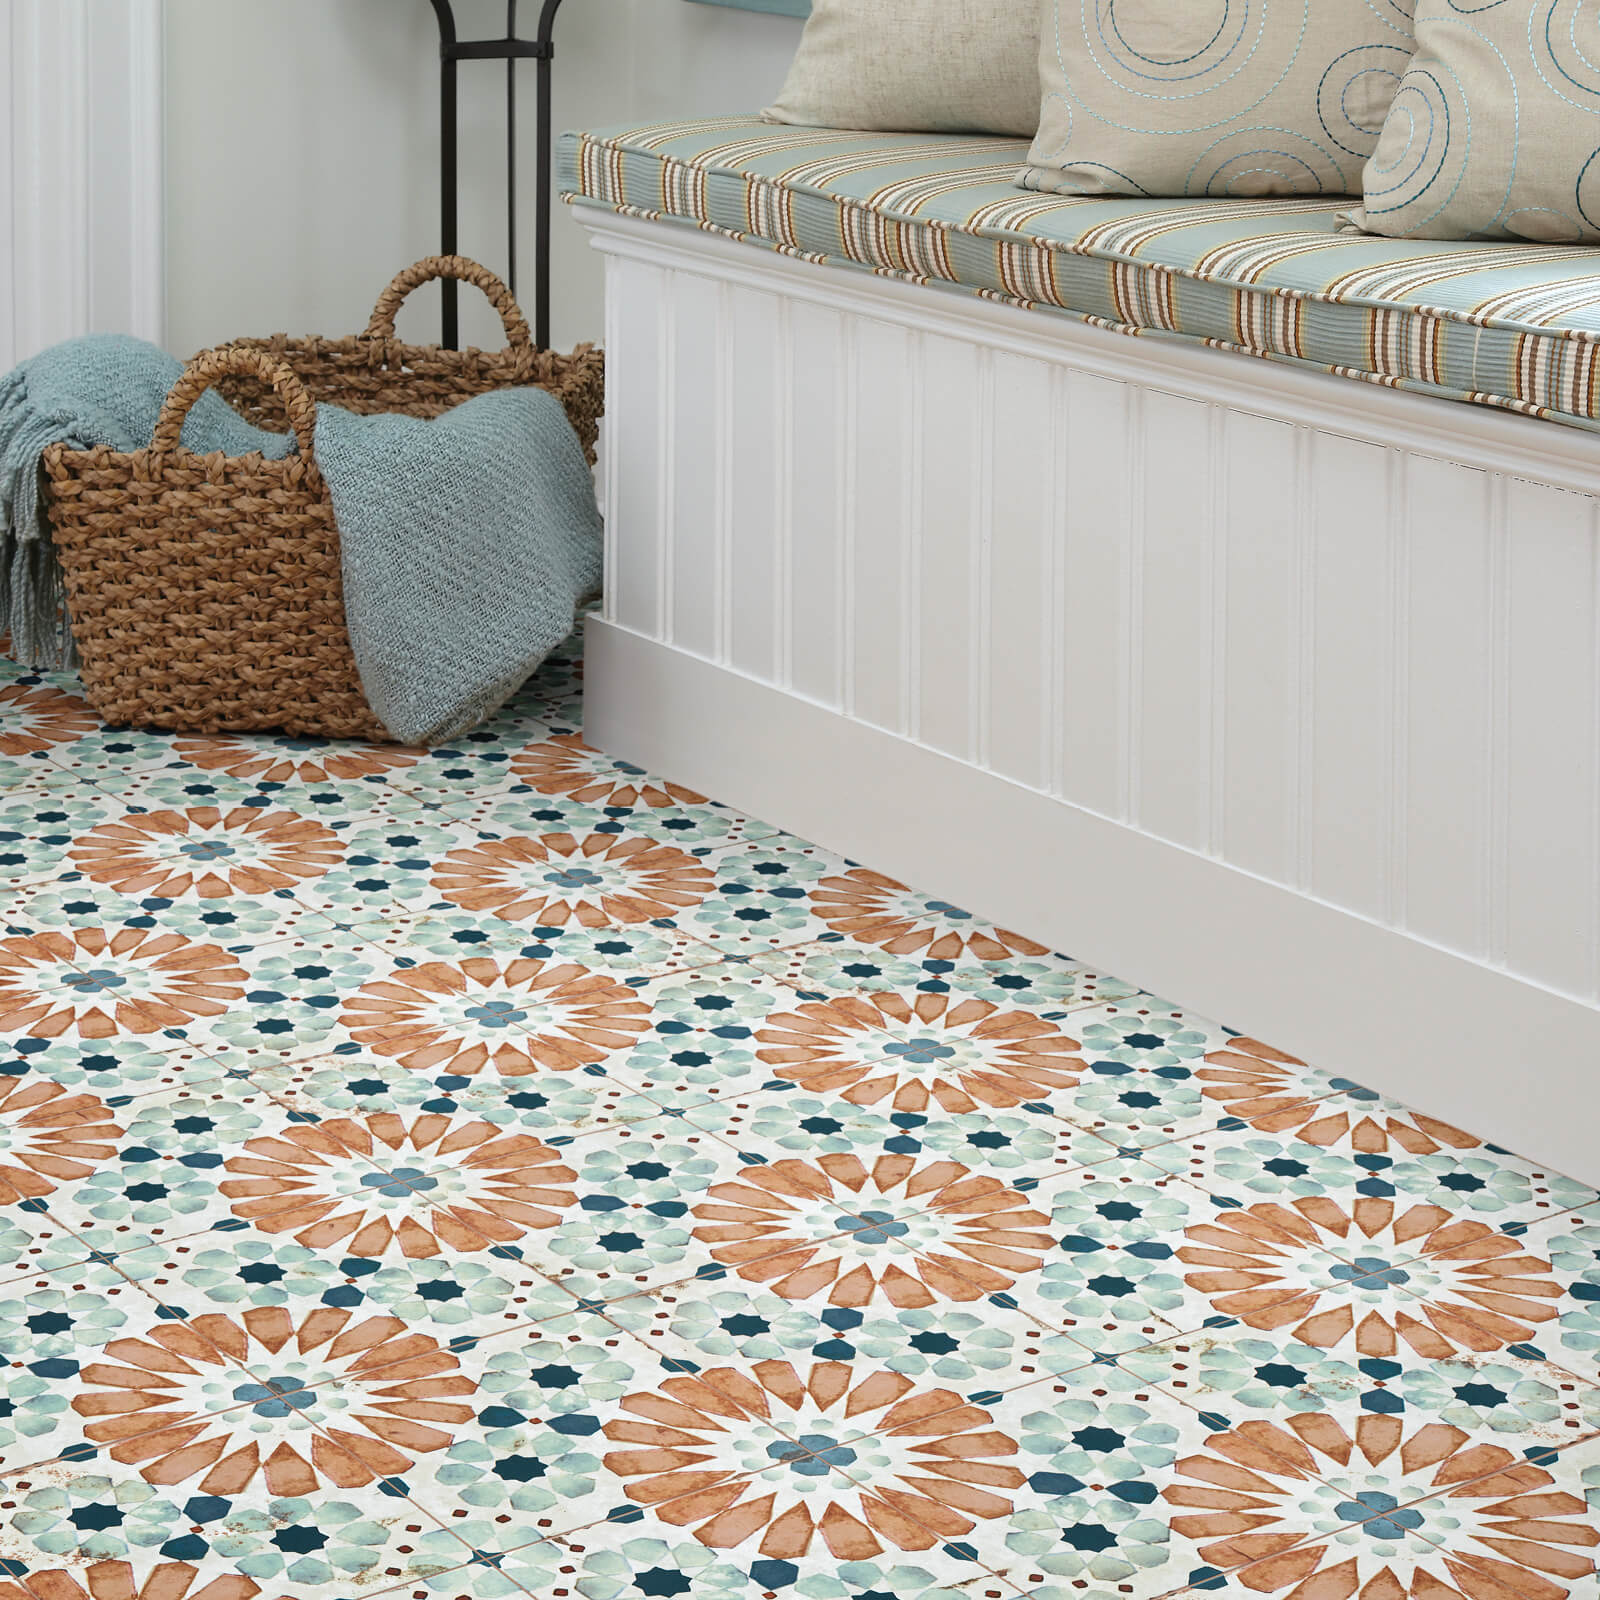 Islander Tiles | J/K Carpet Center, Inc